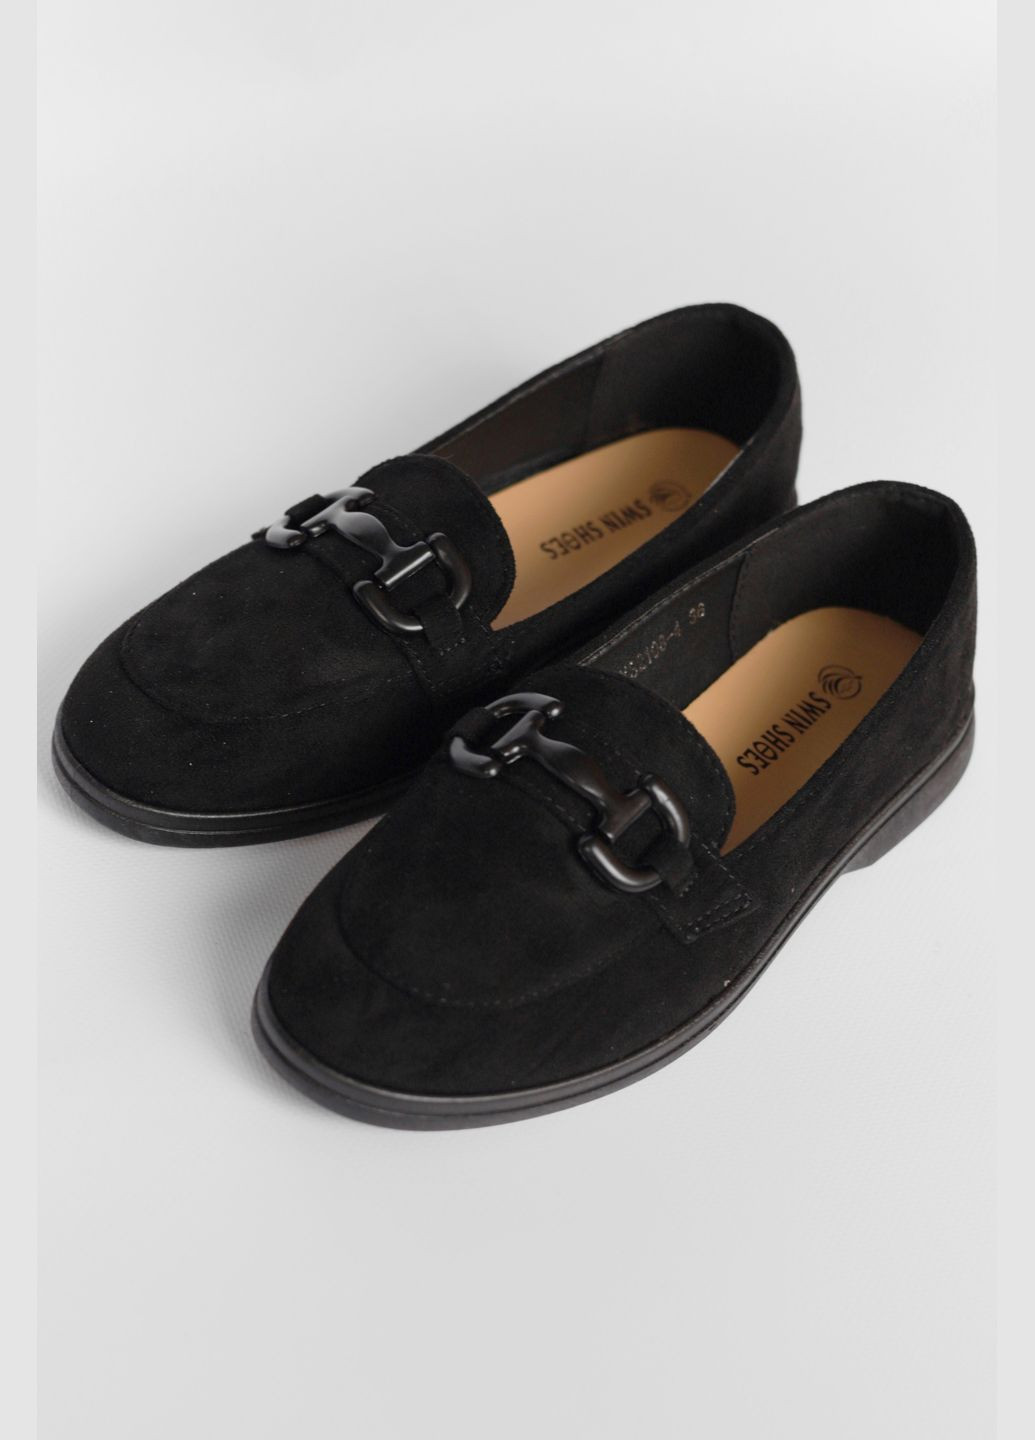 Туфли-лоферы женские черного цвета Let's Shop с цепочками